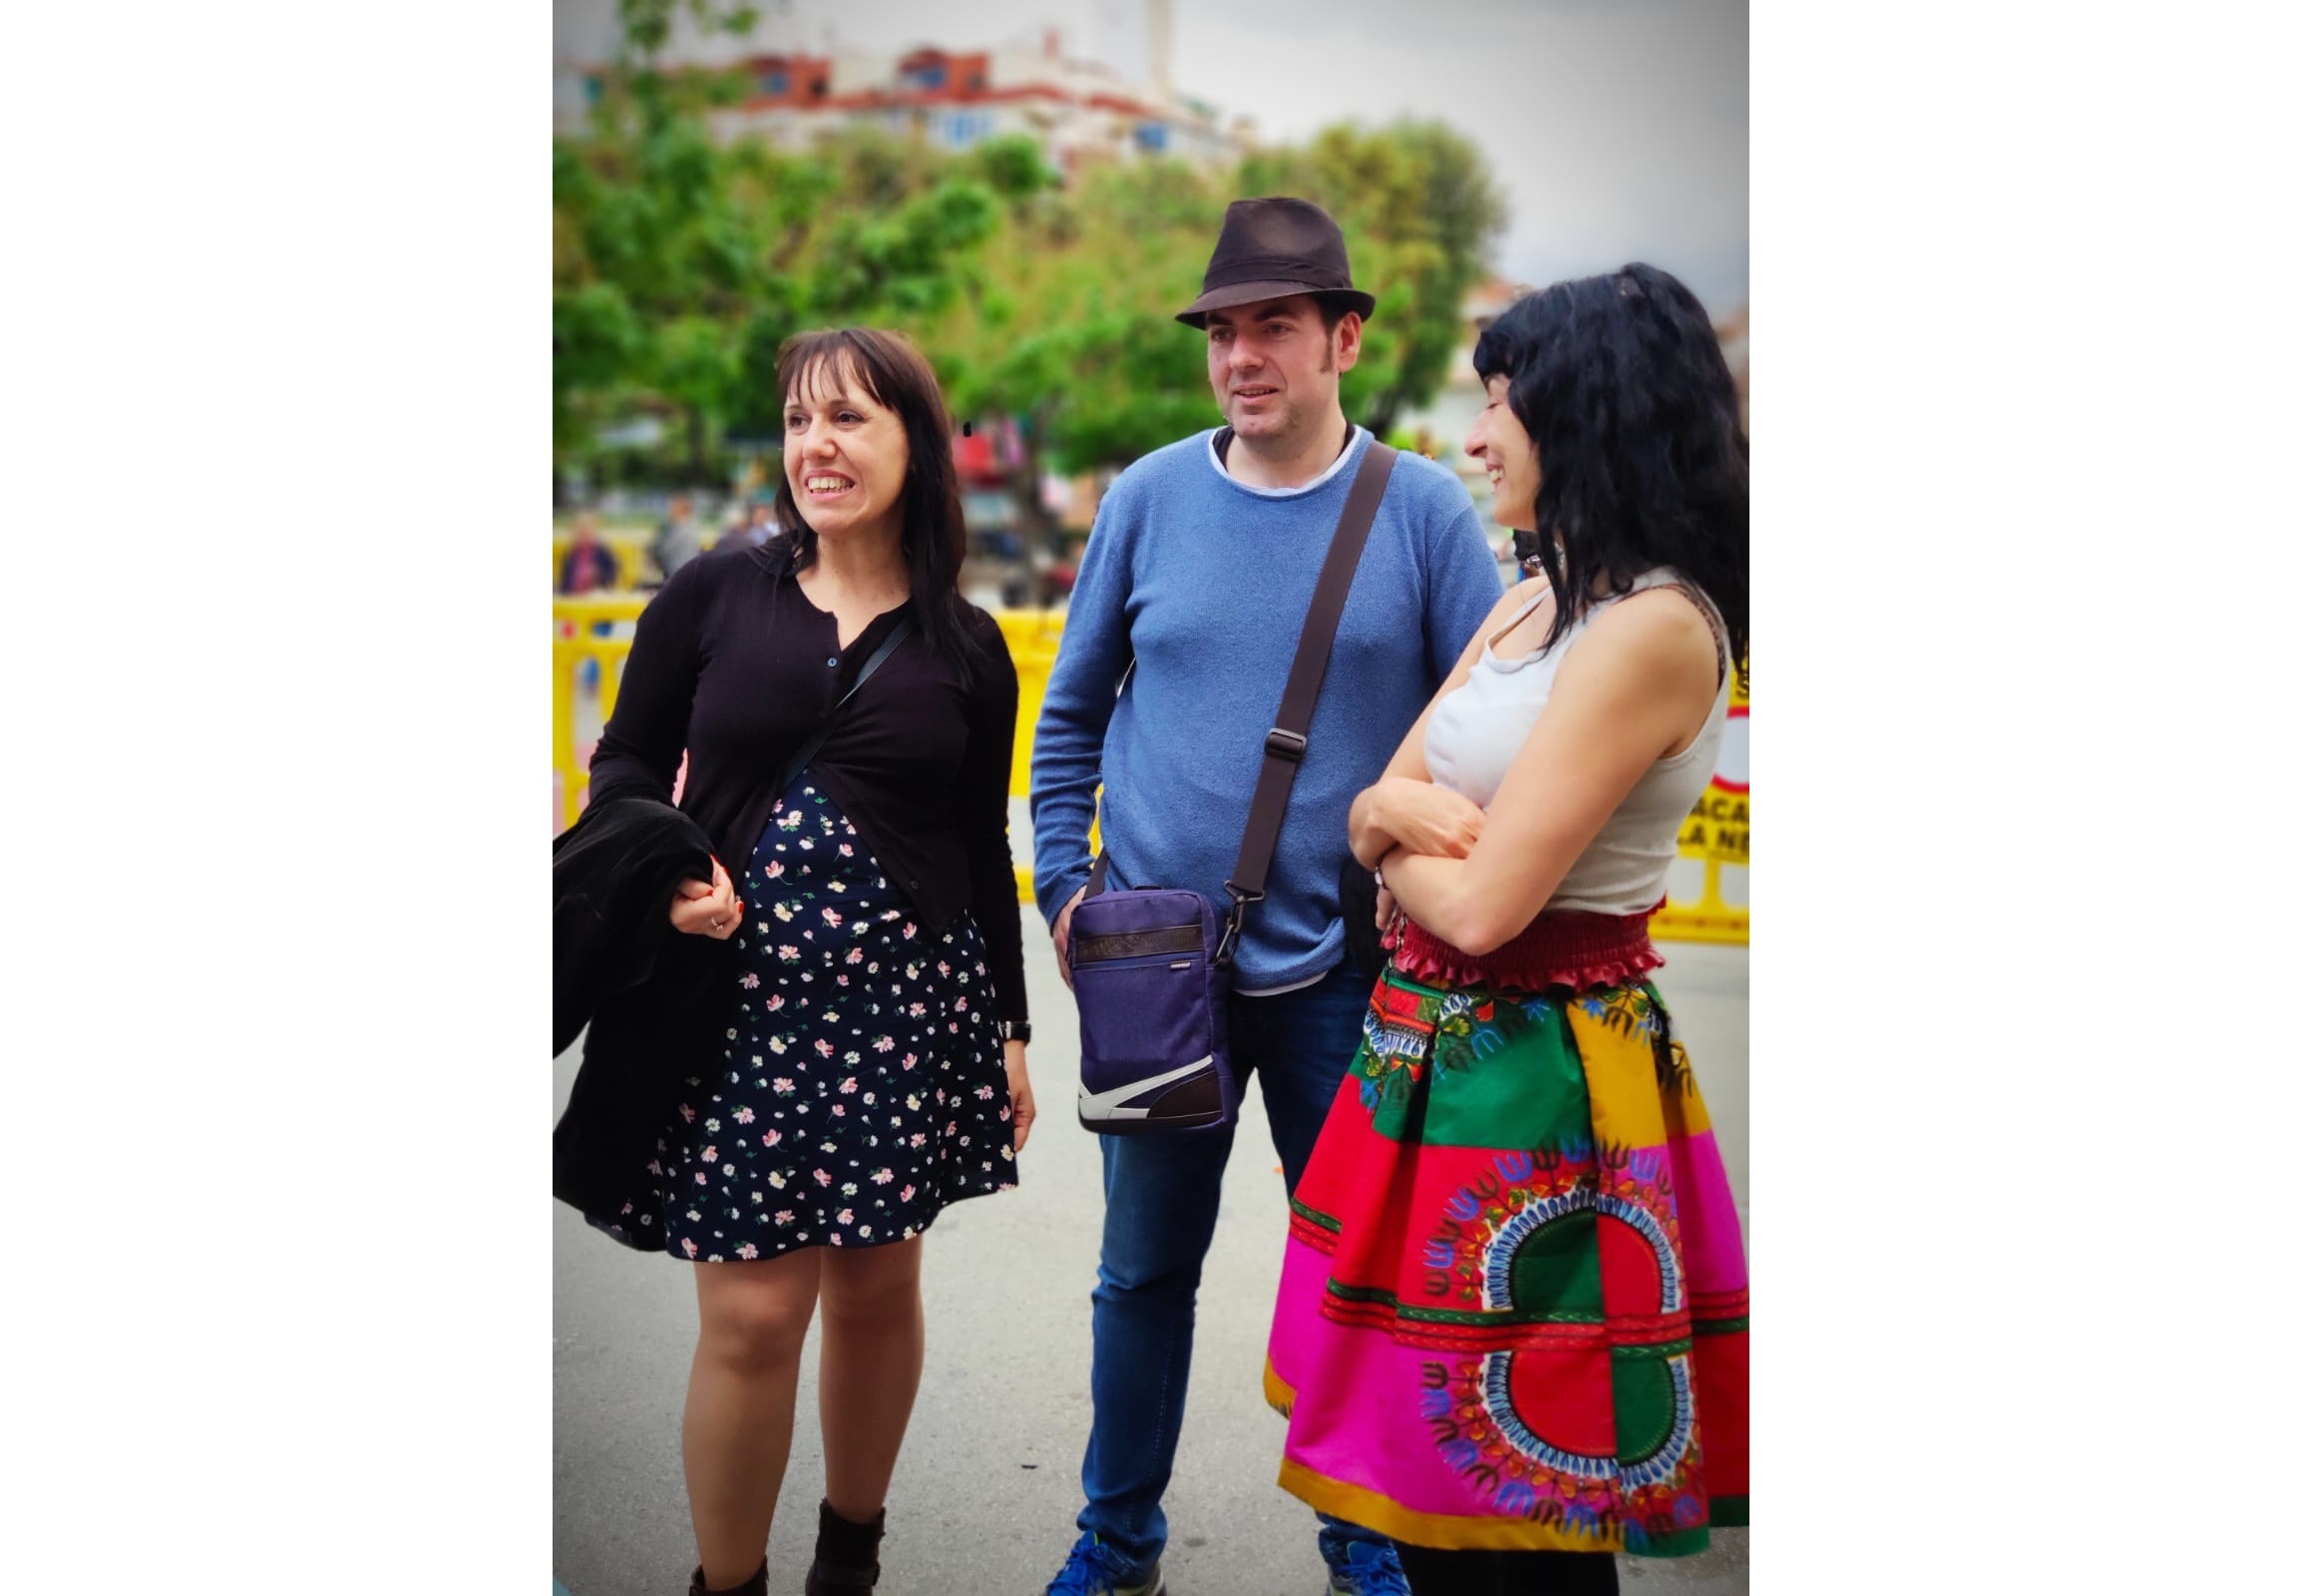 Roser Amills en la I Feria del Libro de La Llagosta, 2019 con Resistencia Literaria